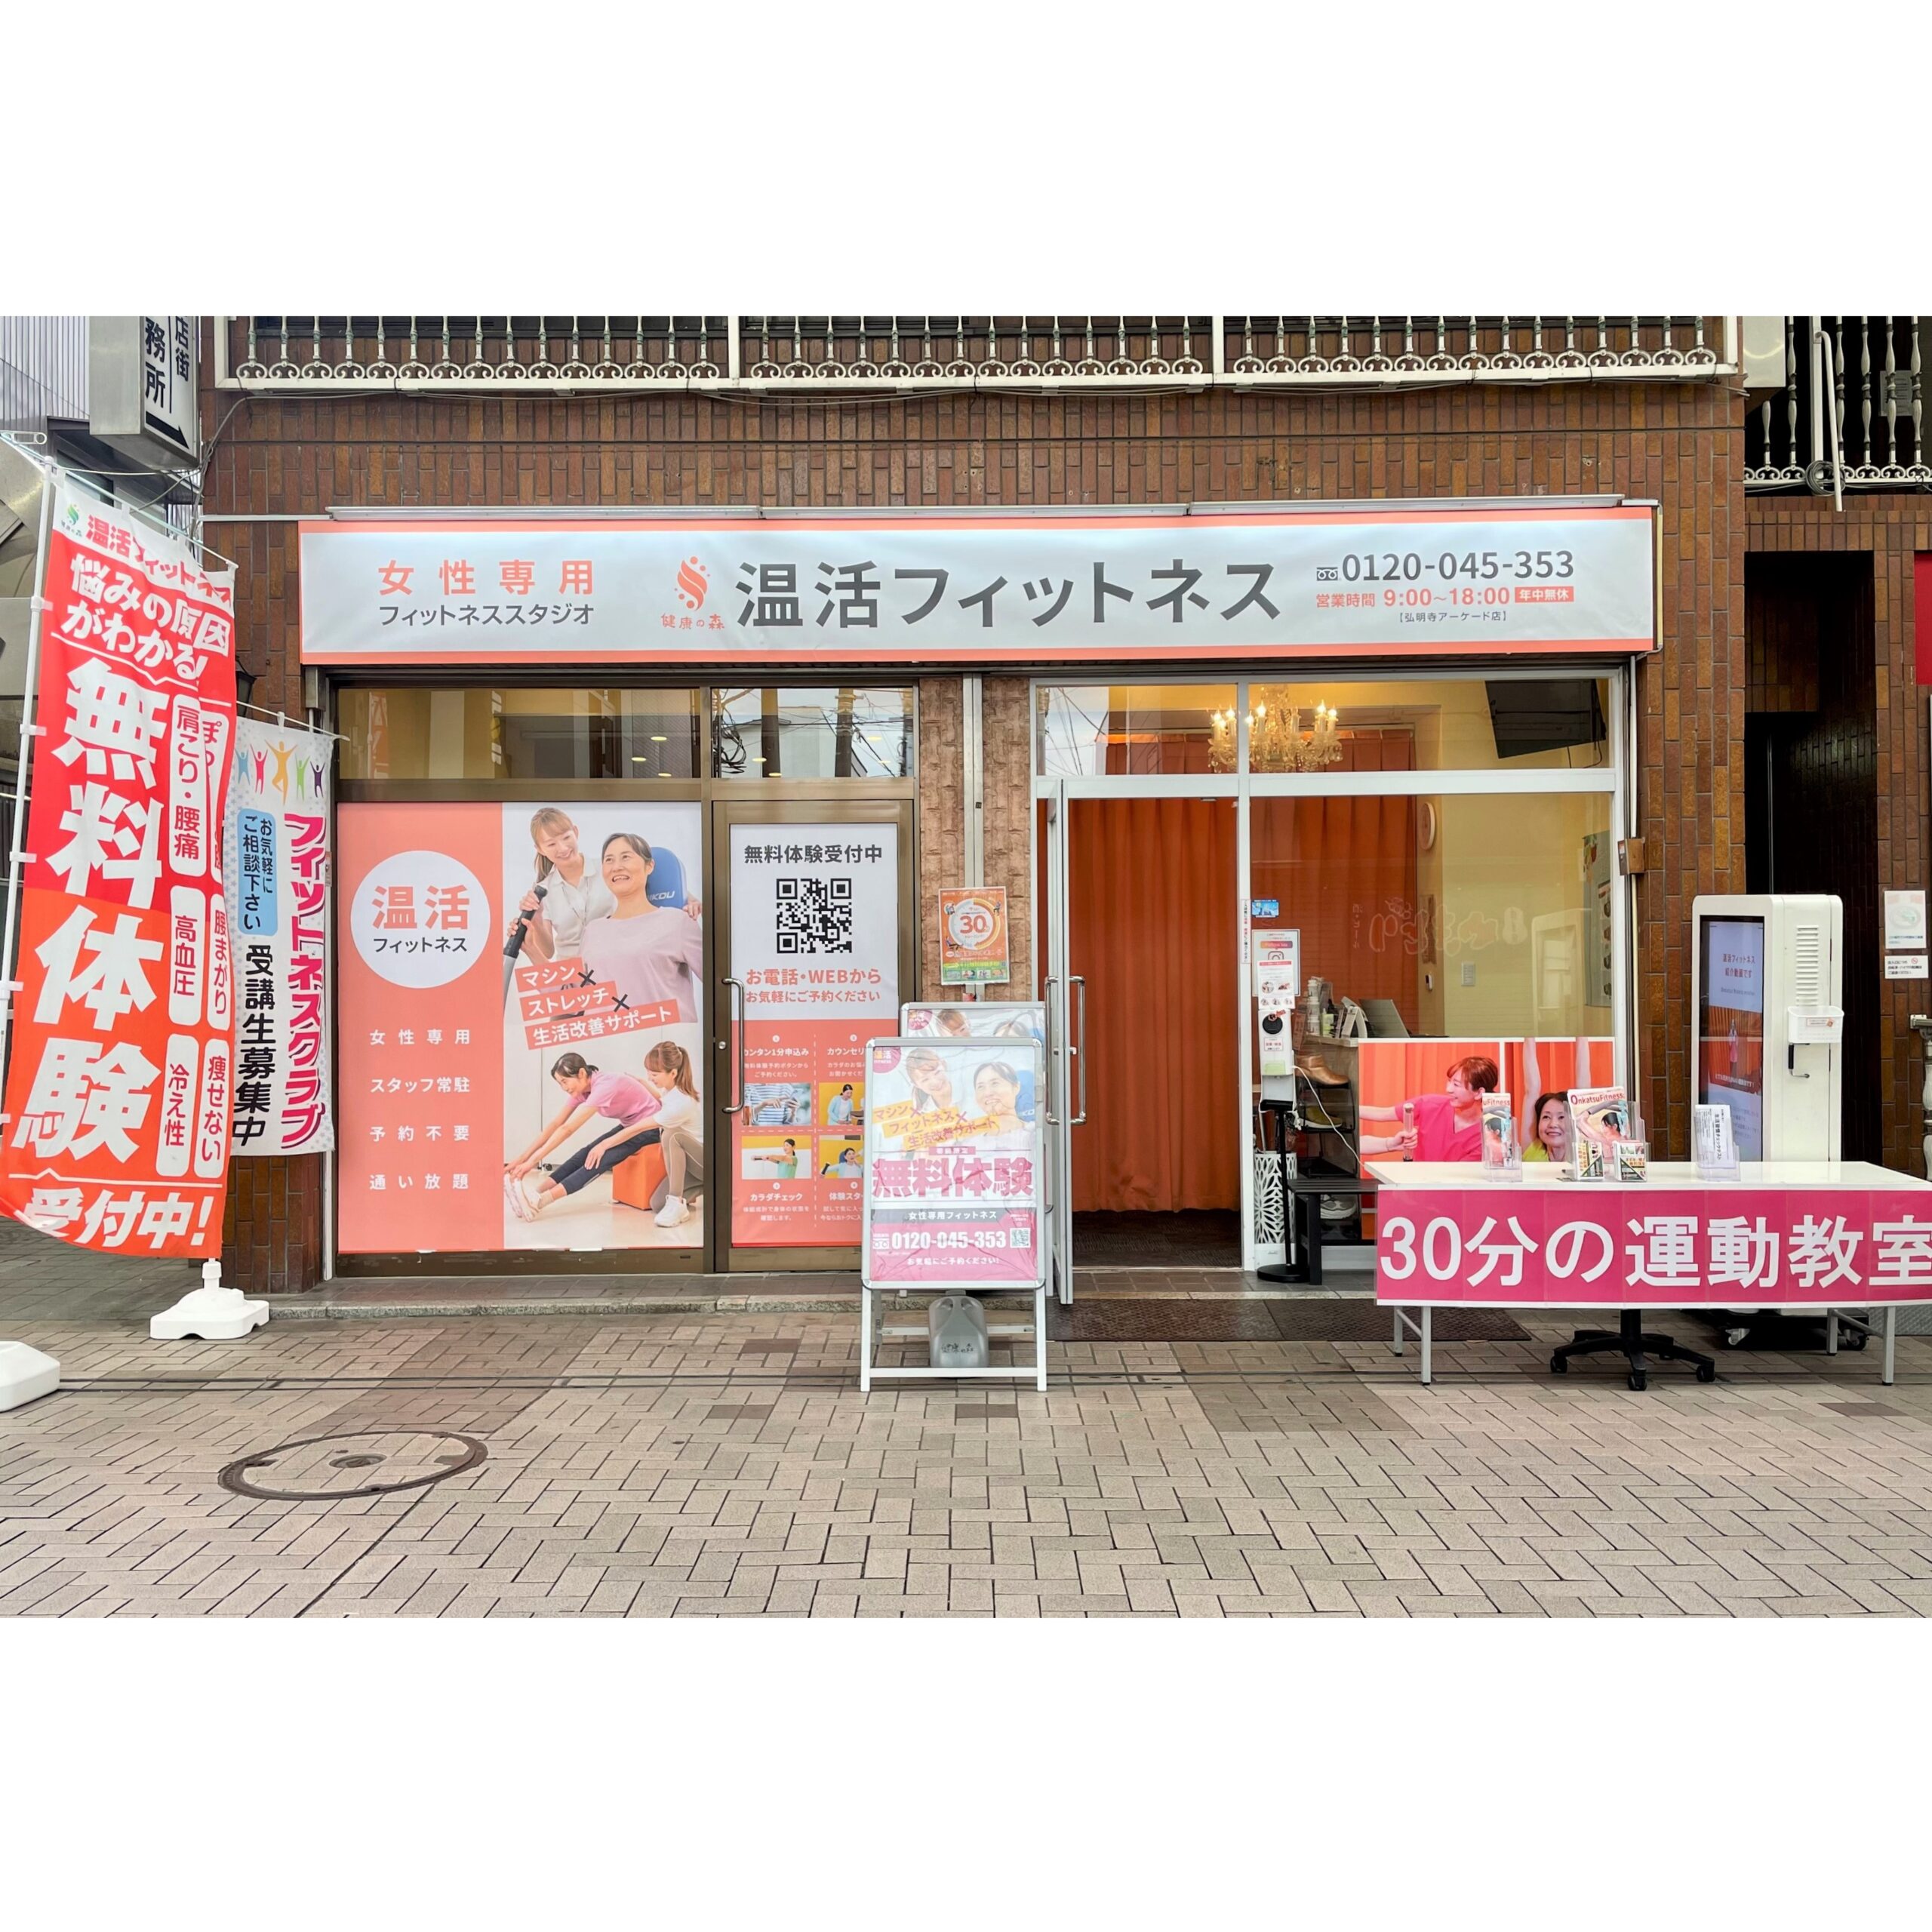 健康の森 横浜弘明寺アーケード店店舗イメージ1